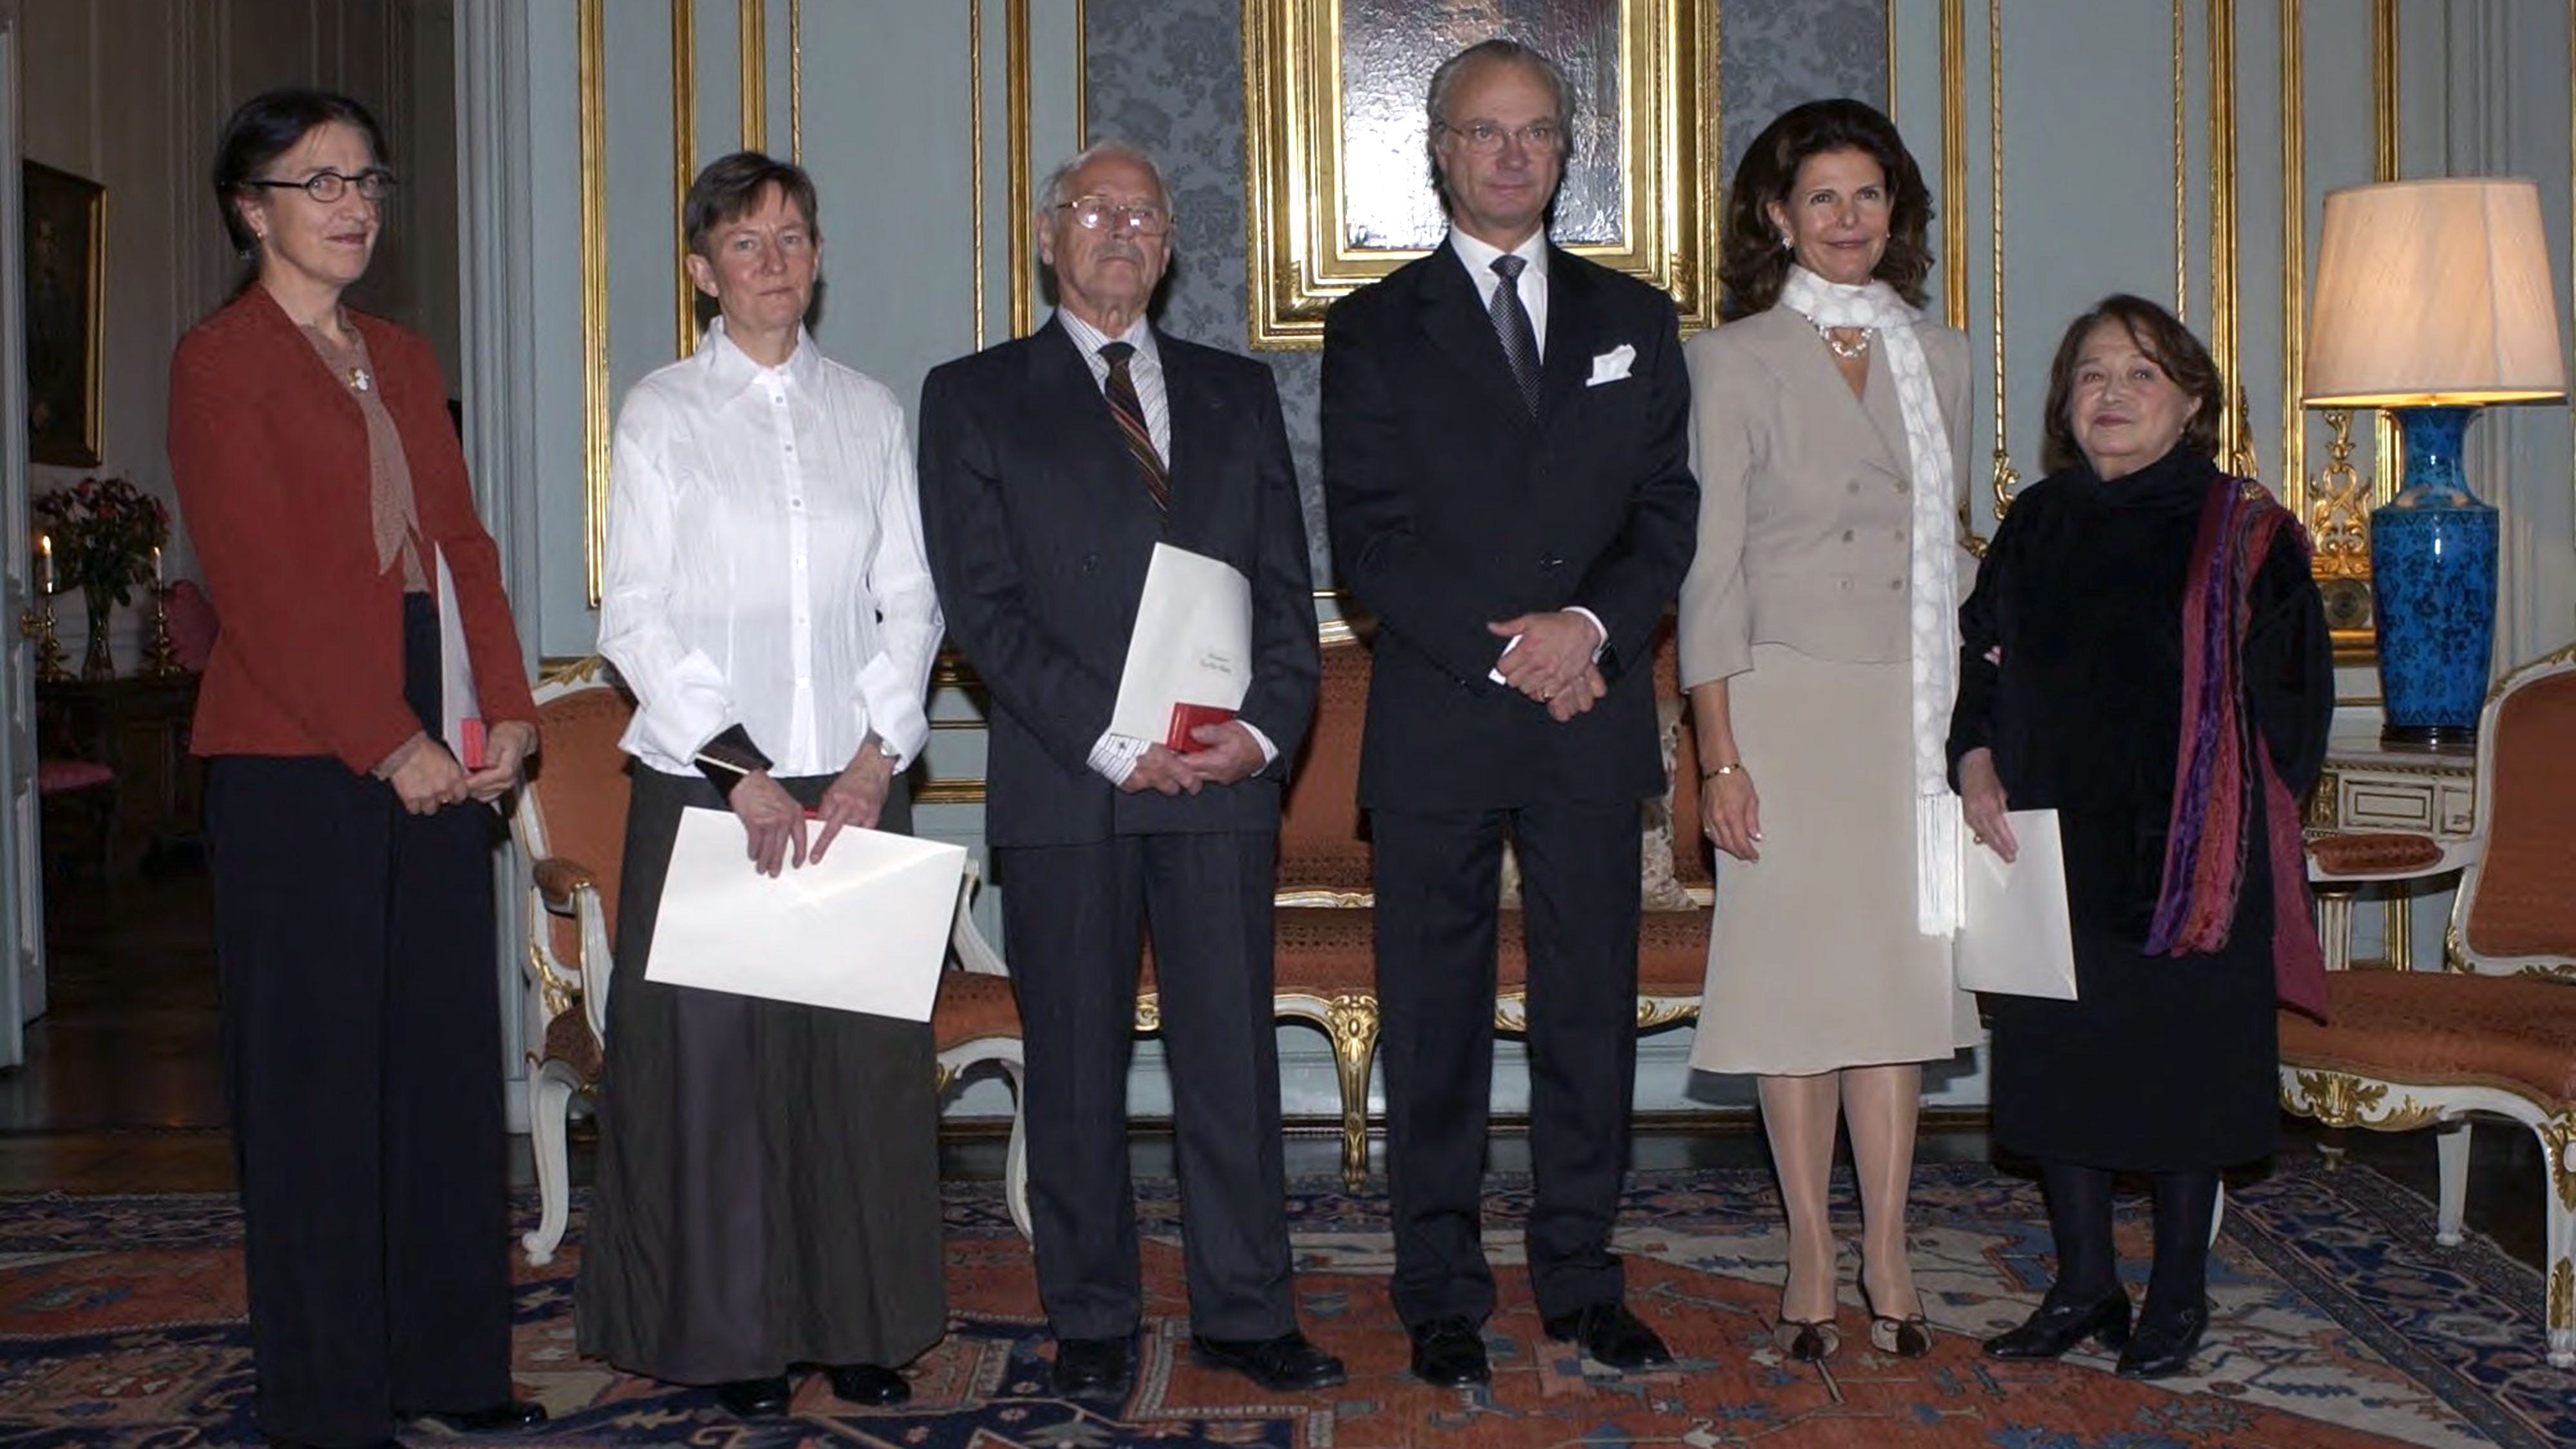 Léonie Geisendorf (längst till höger) tar emot Prins Eugen-medaljen ur kung Carl Gustafs hand vid en ceremoni 2003.